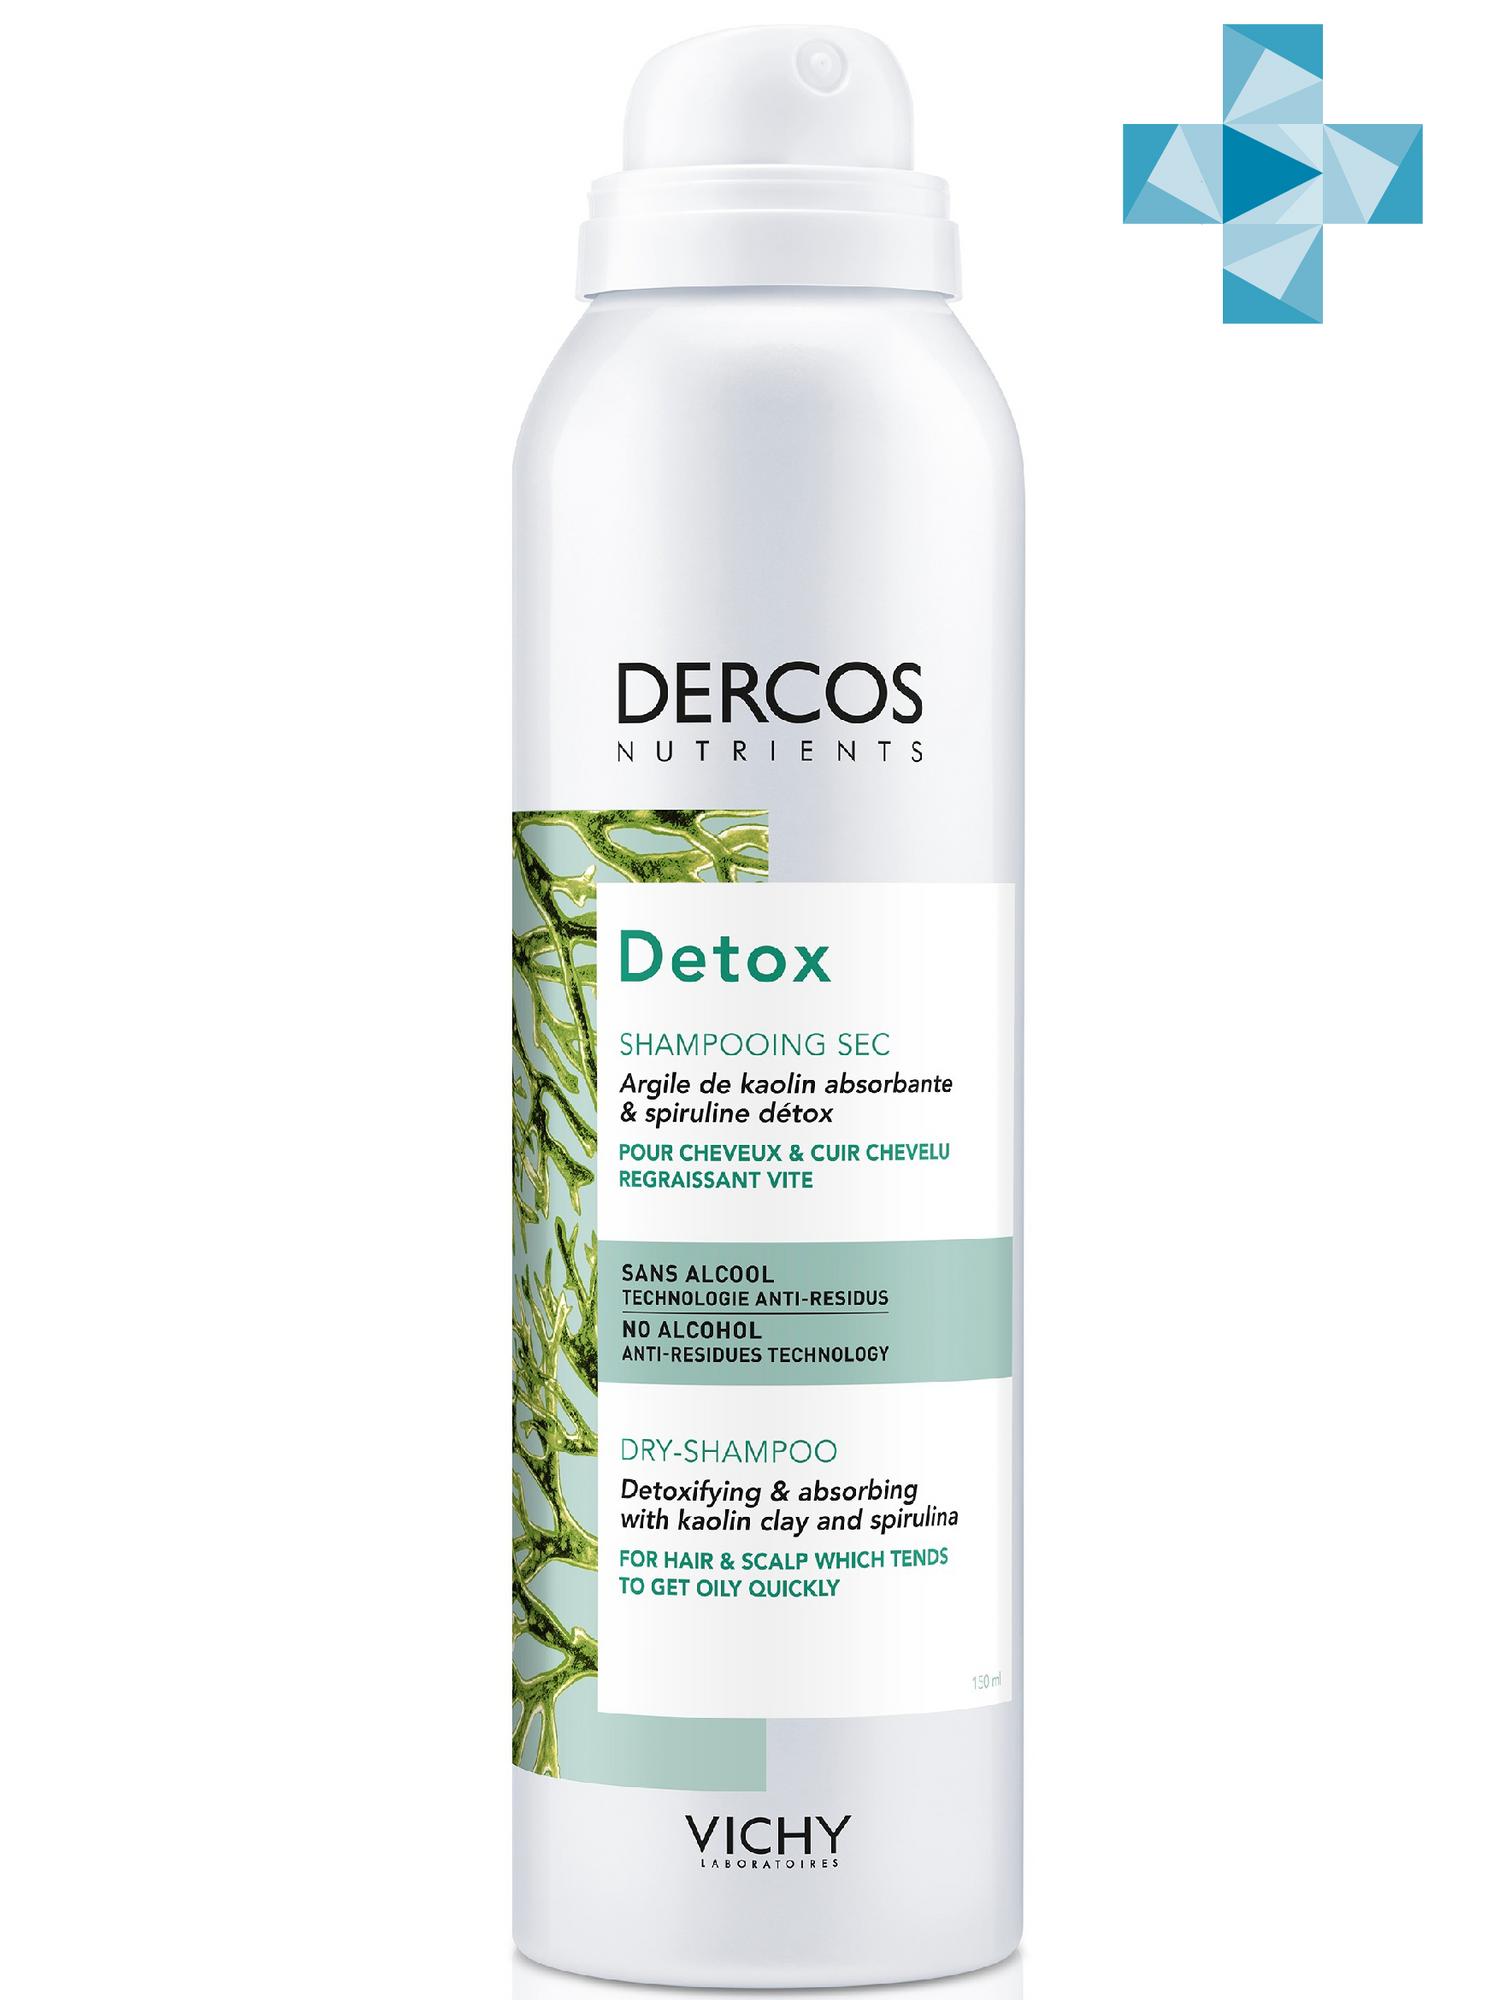 Vichy Сухой шампунь Detox для интенсивного очищения, 150 мл (Vichy, Dercos Nutrients)